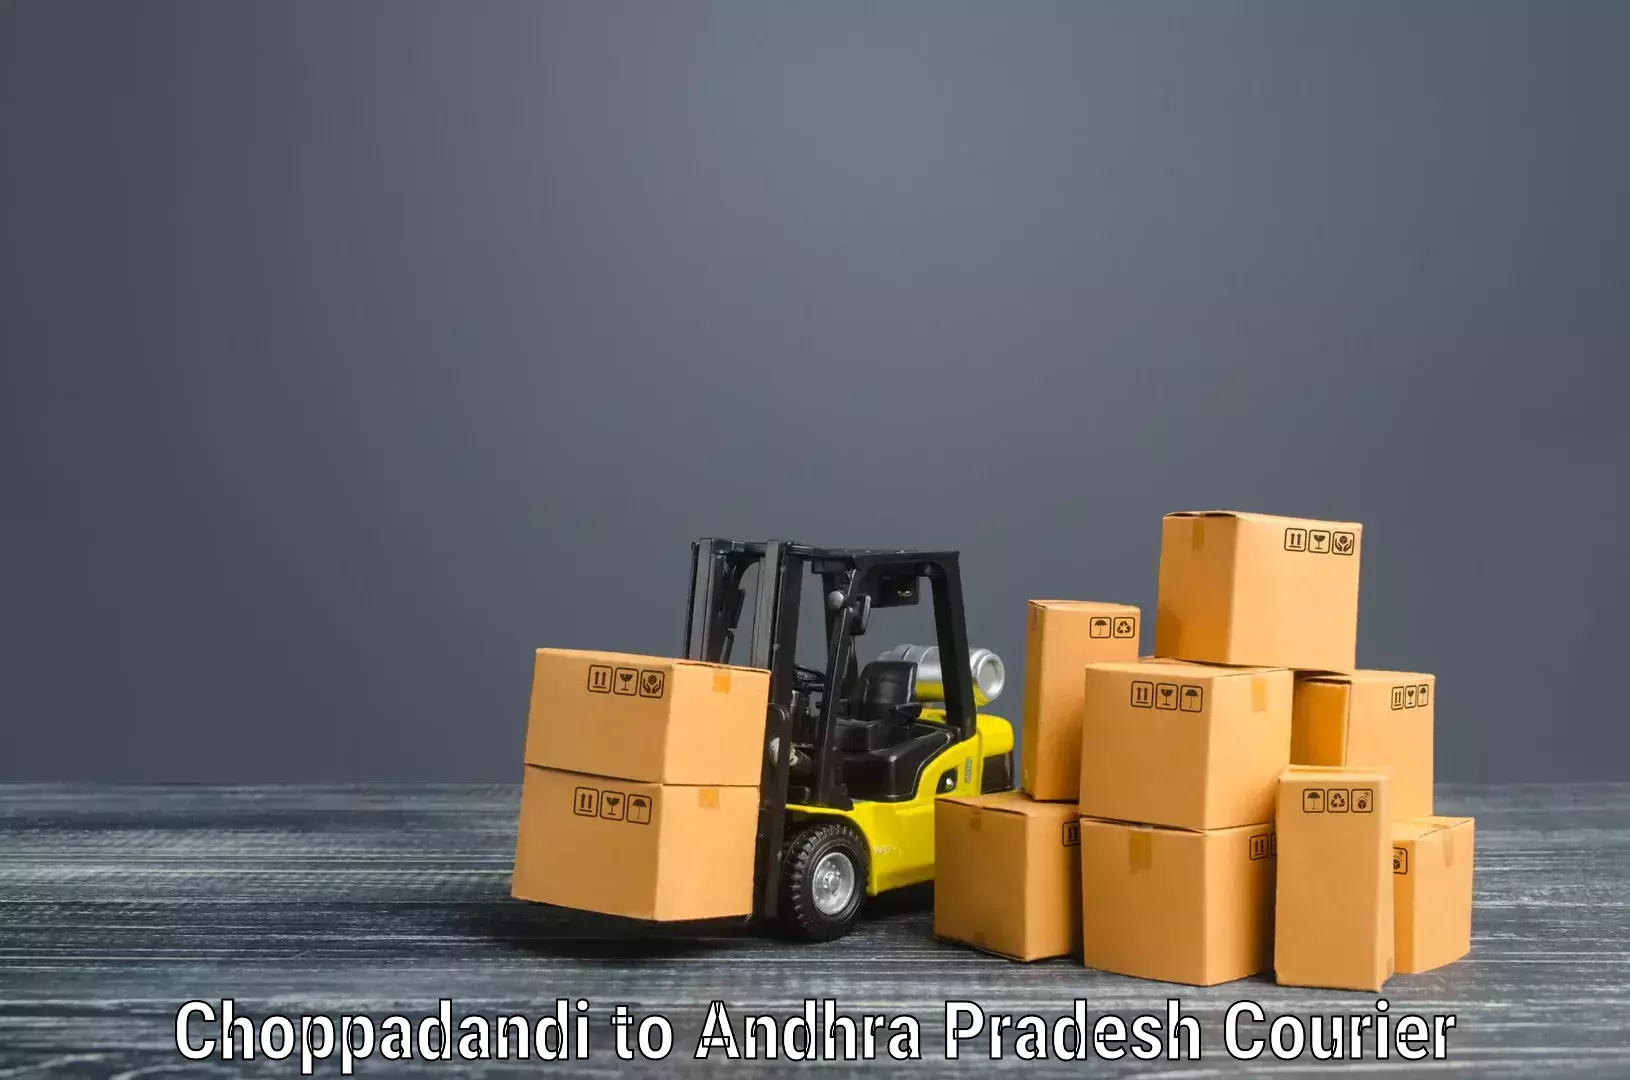 Expert goods movers Choppadandi to Krishna AP